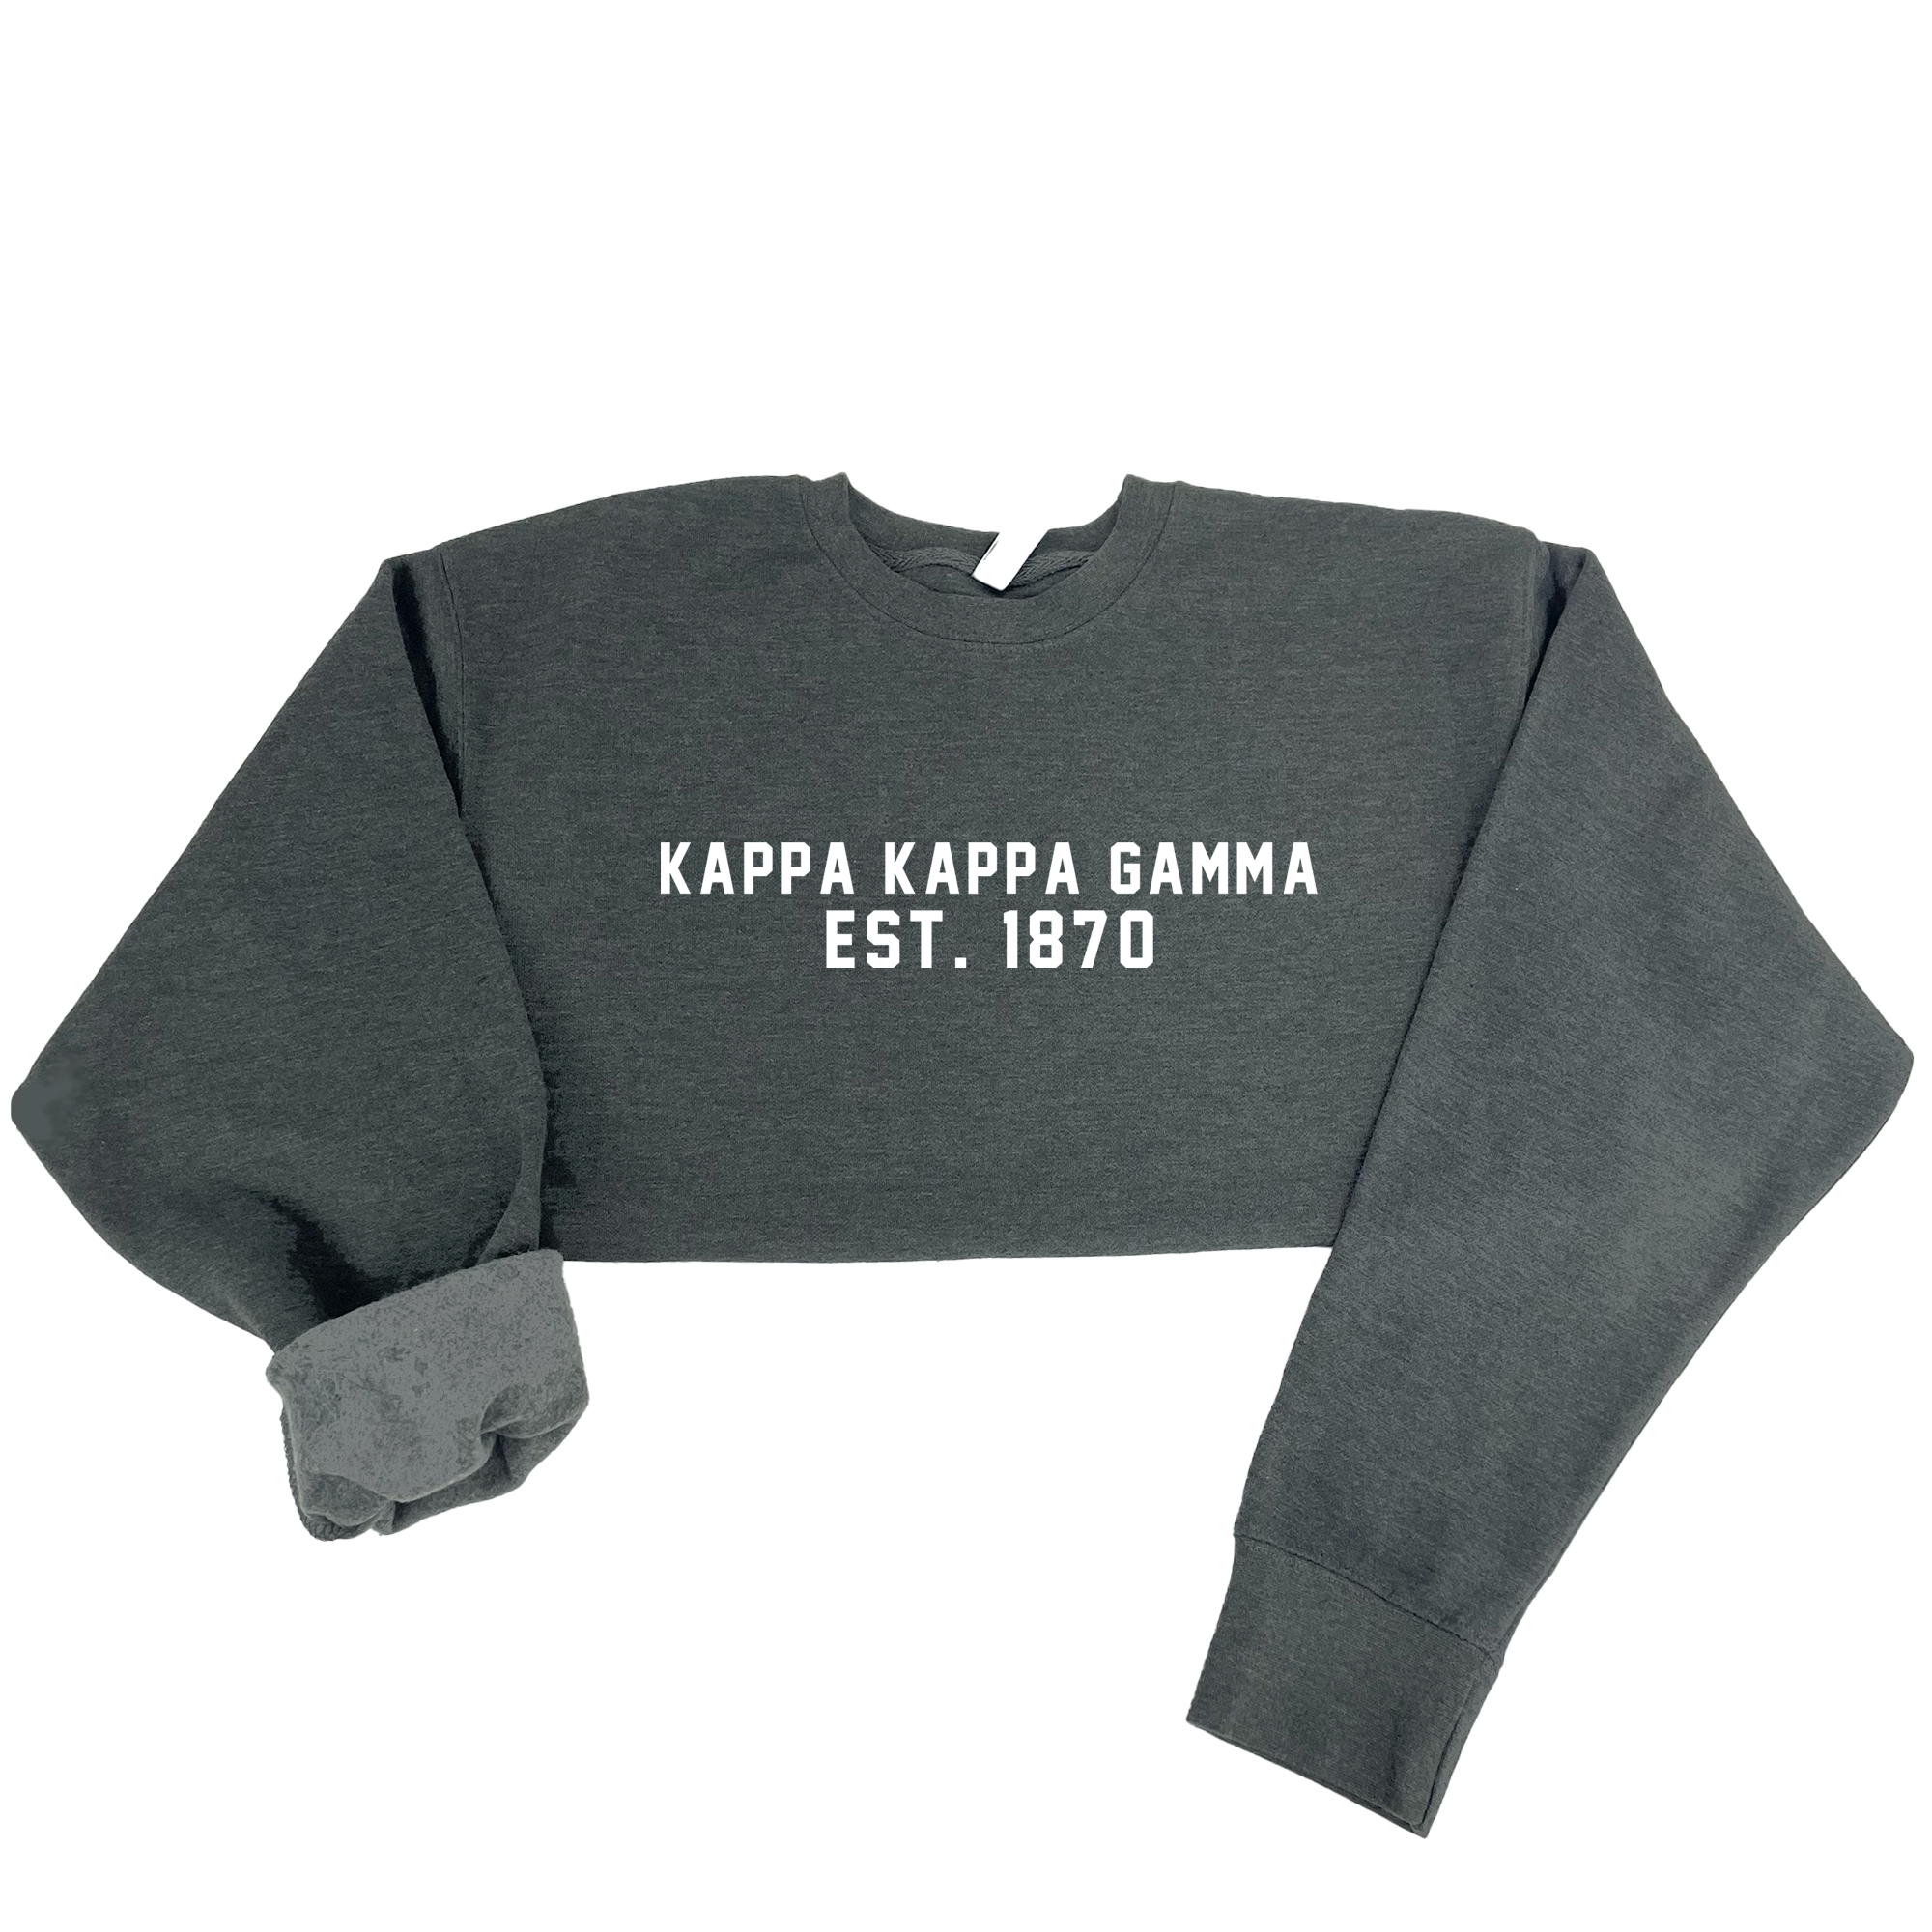 Kappa Kappa Gamma Est. 1870 Sweatshirt